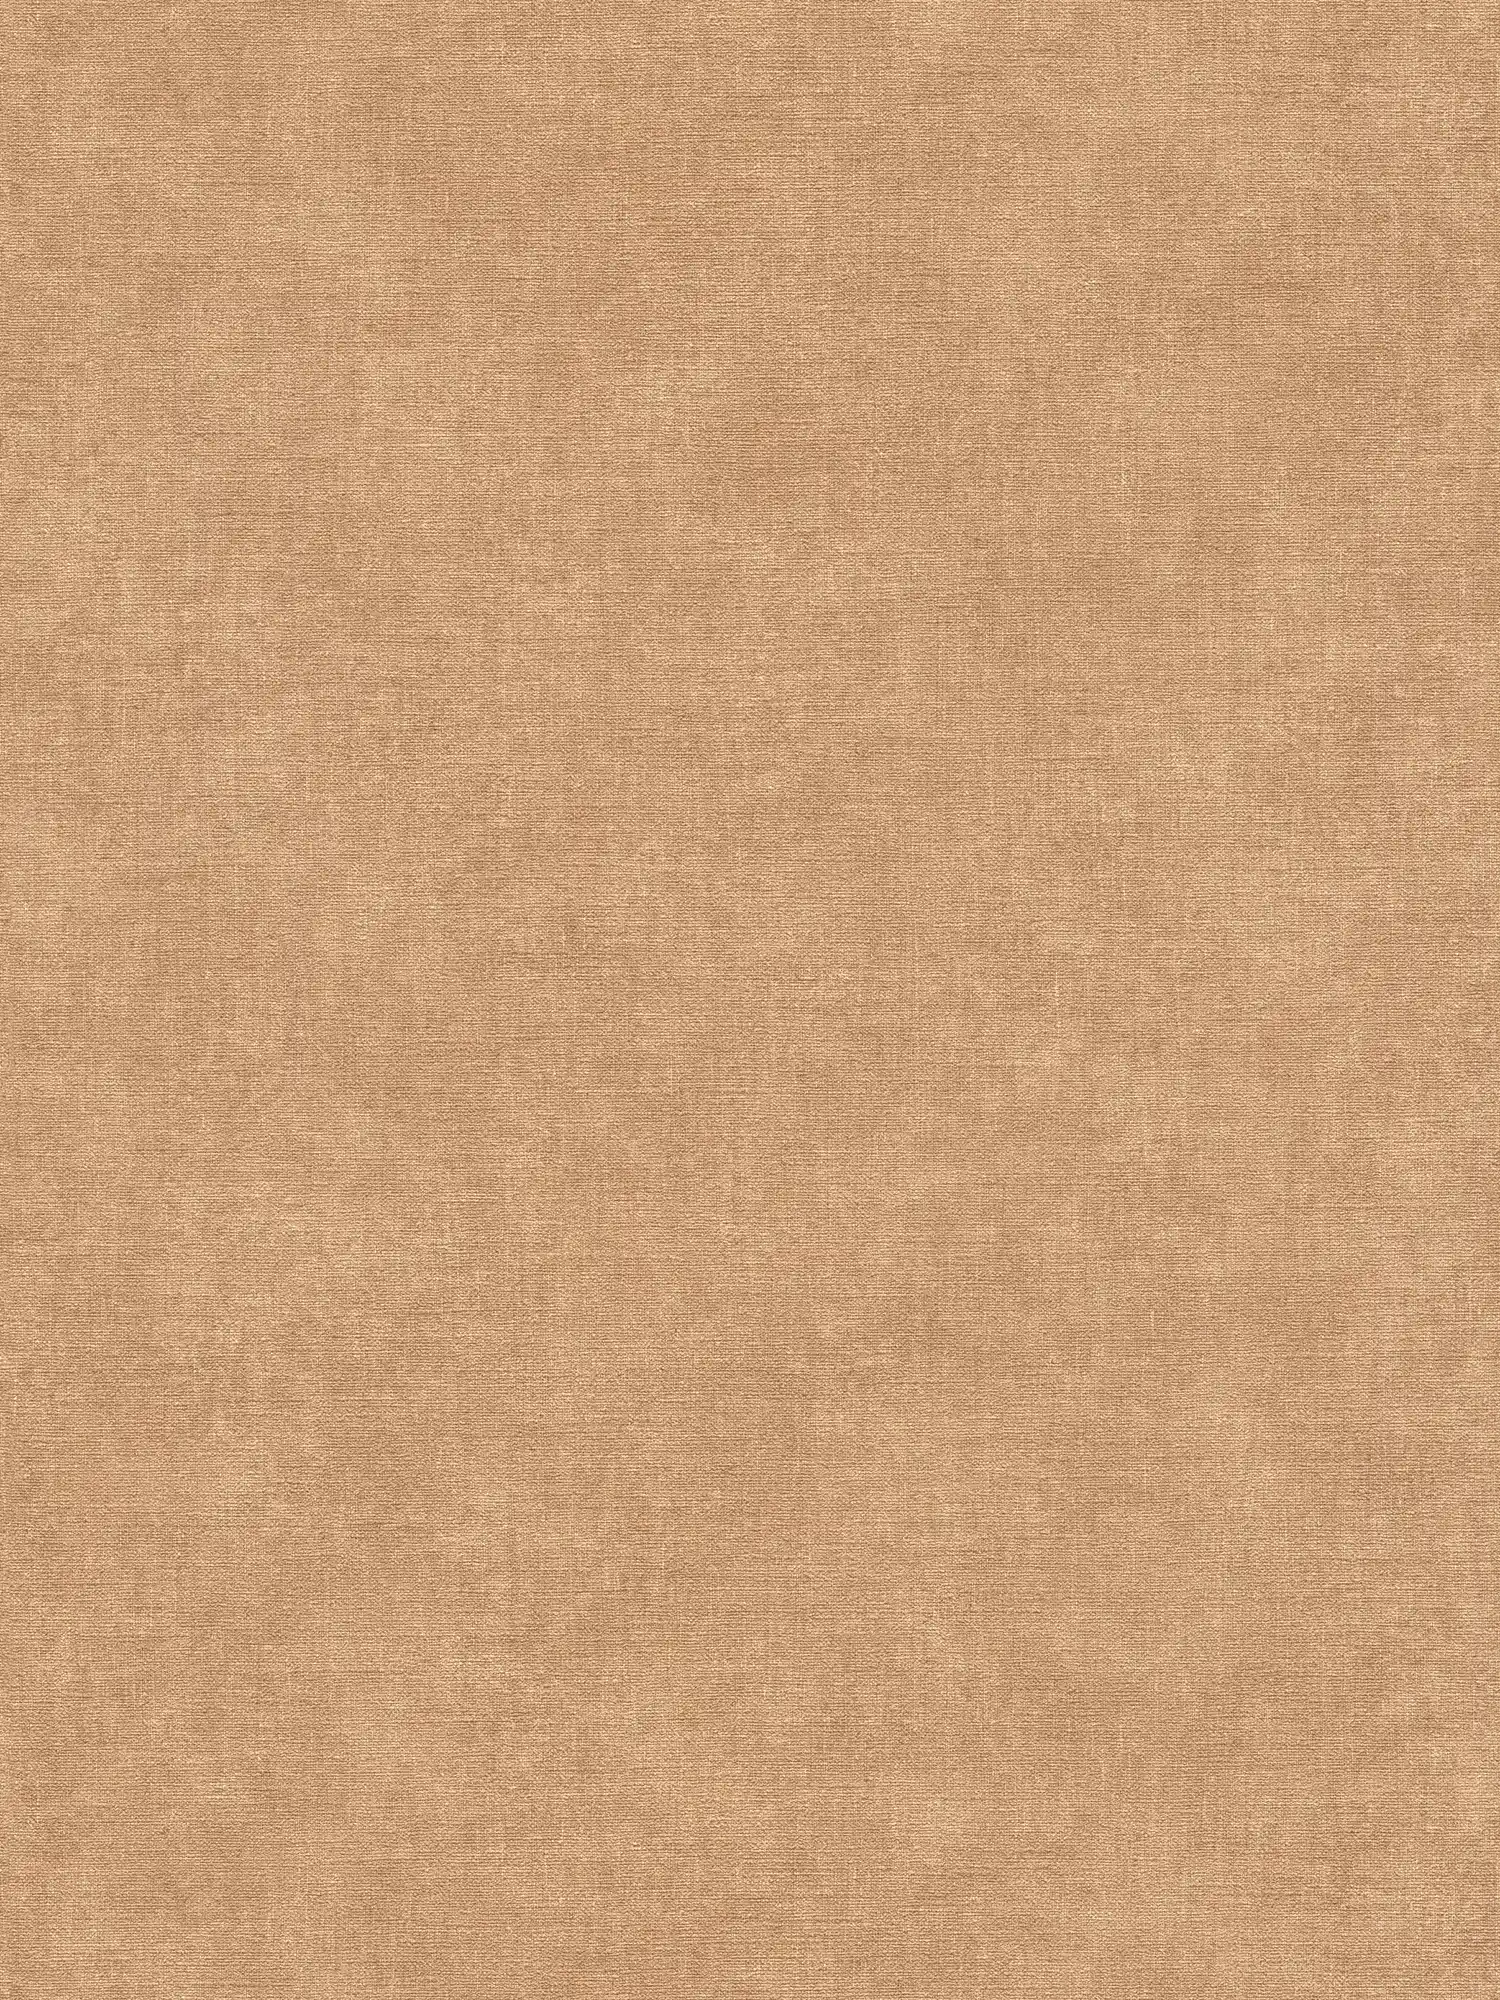 Carta da parati unitaria con texture leggera in aspetto tessile - marrone, beige
